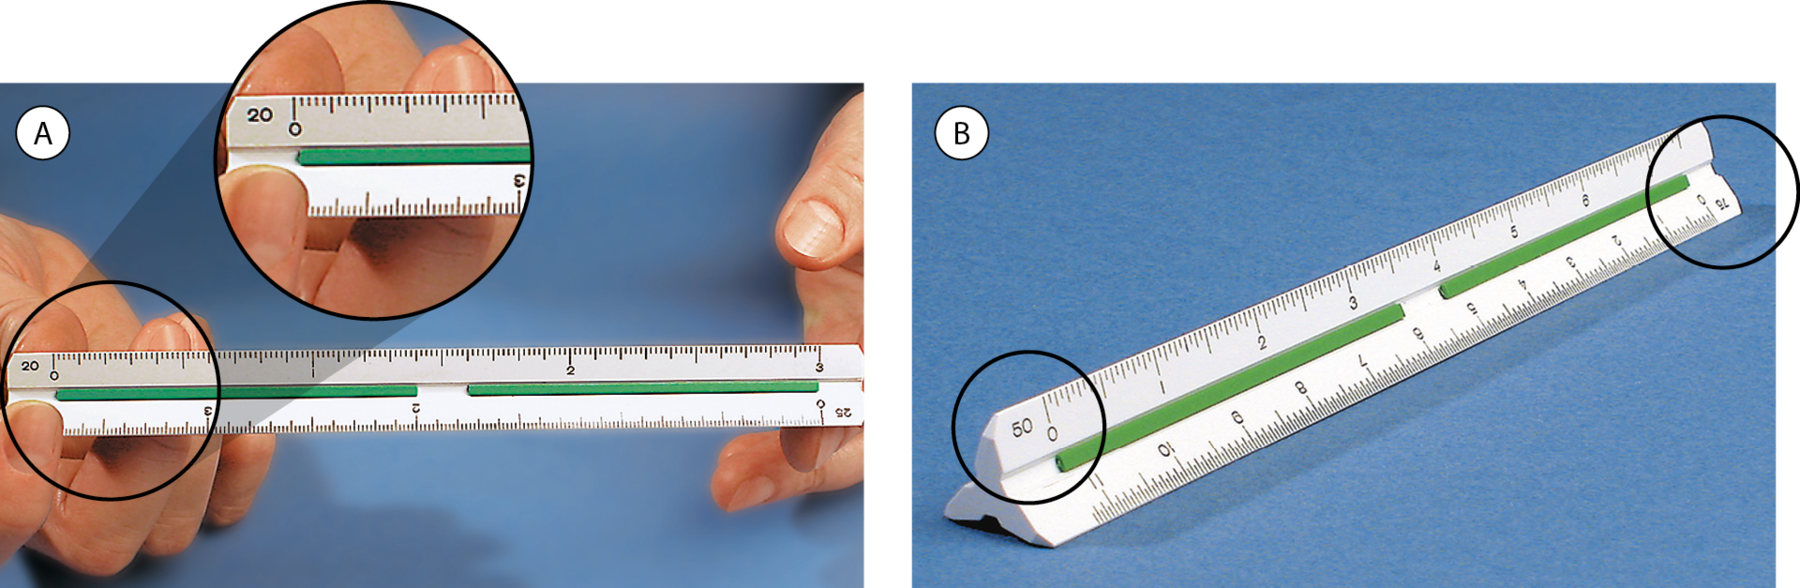 Fotografias.  A. Escalímetro, instrumento graduado com medidas em formato triangular.  B. Destaque para as extremidades do escalímetro.